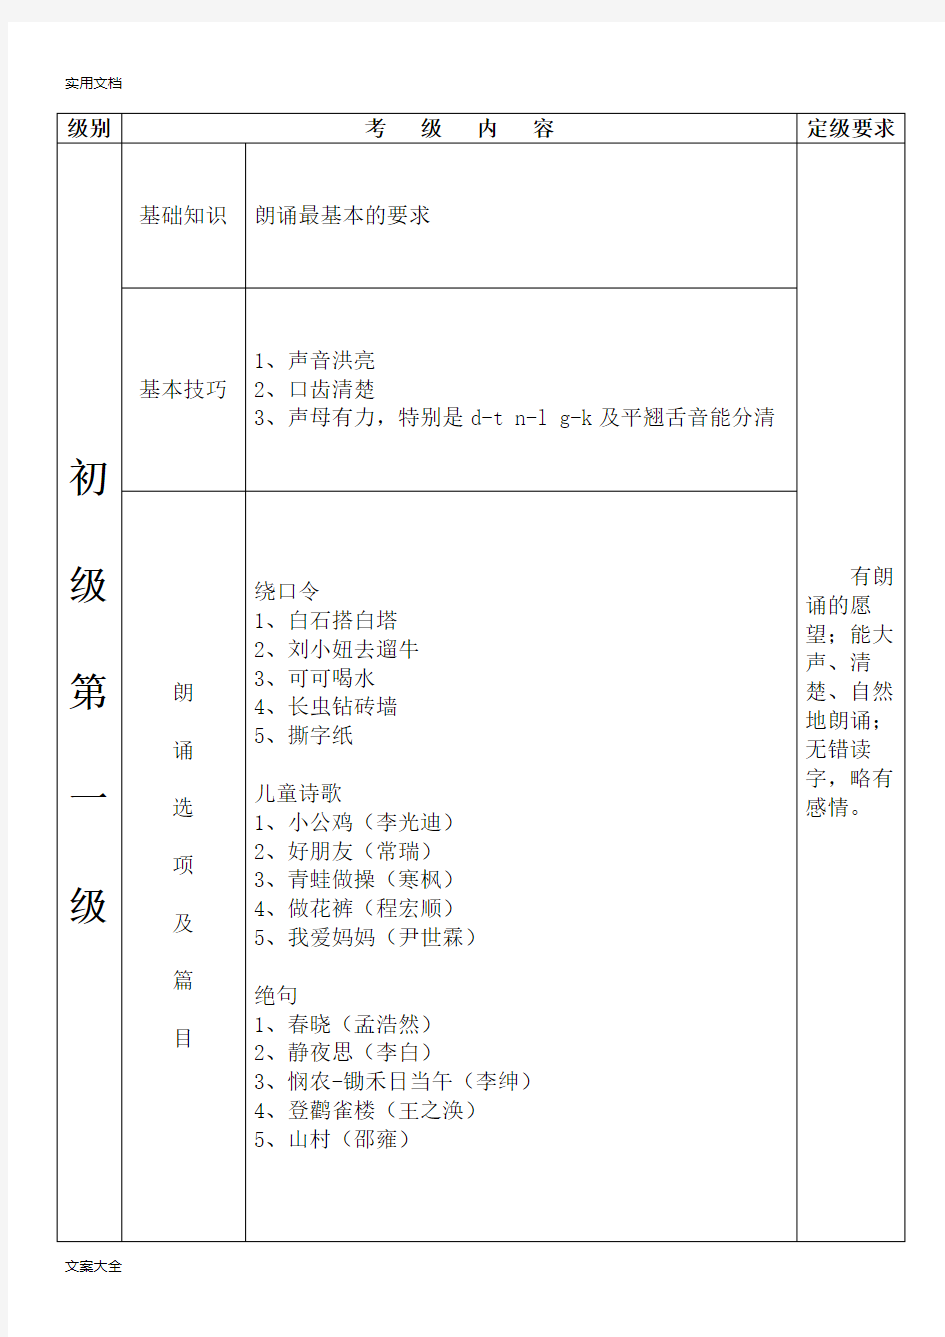 朗诵考级-初级(1-5)中国歌剧舞剧院专用教材电子版